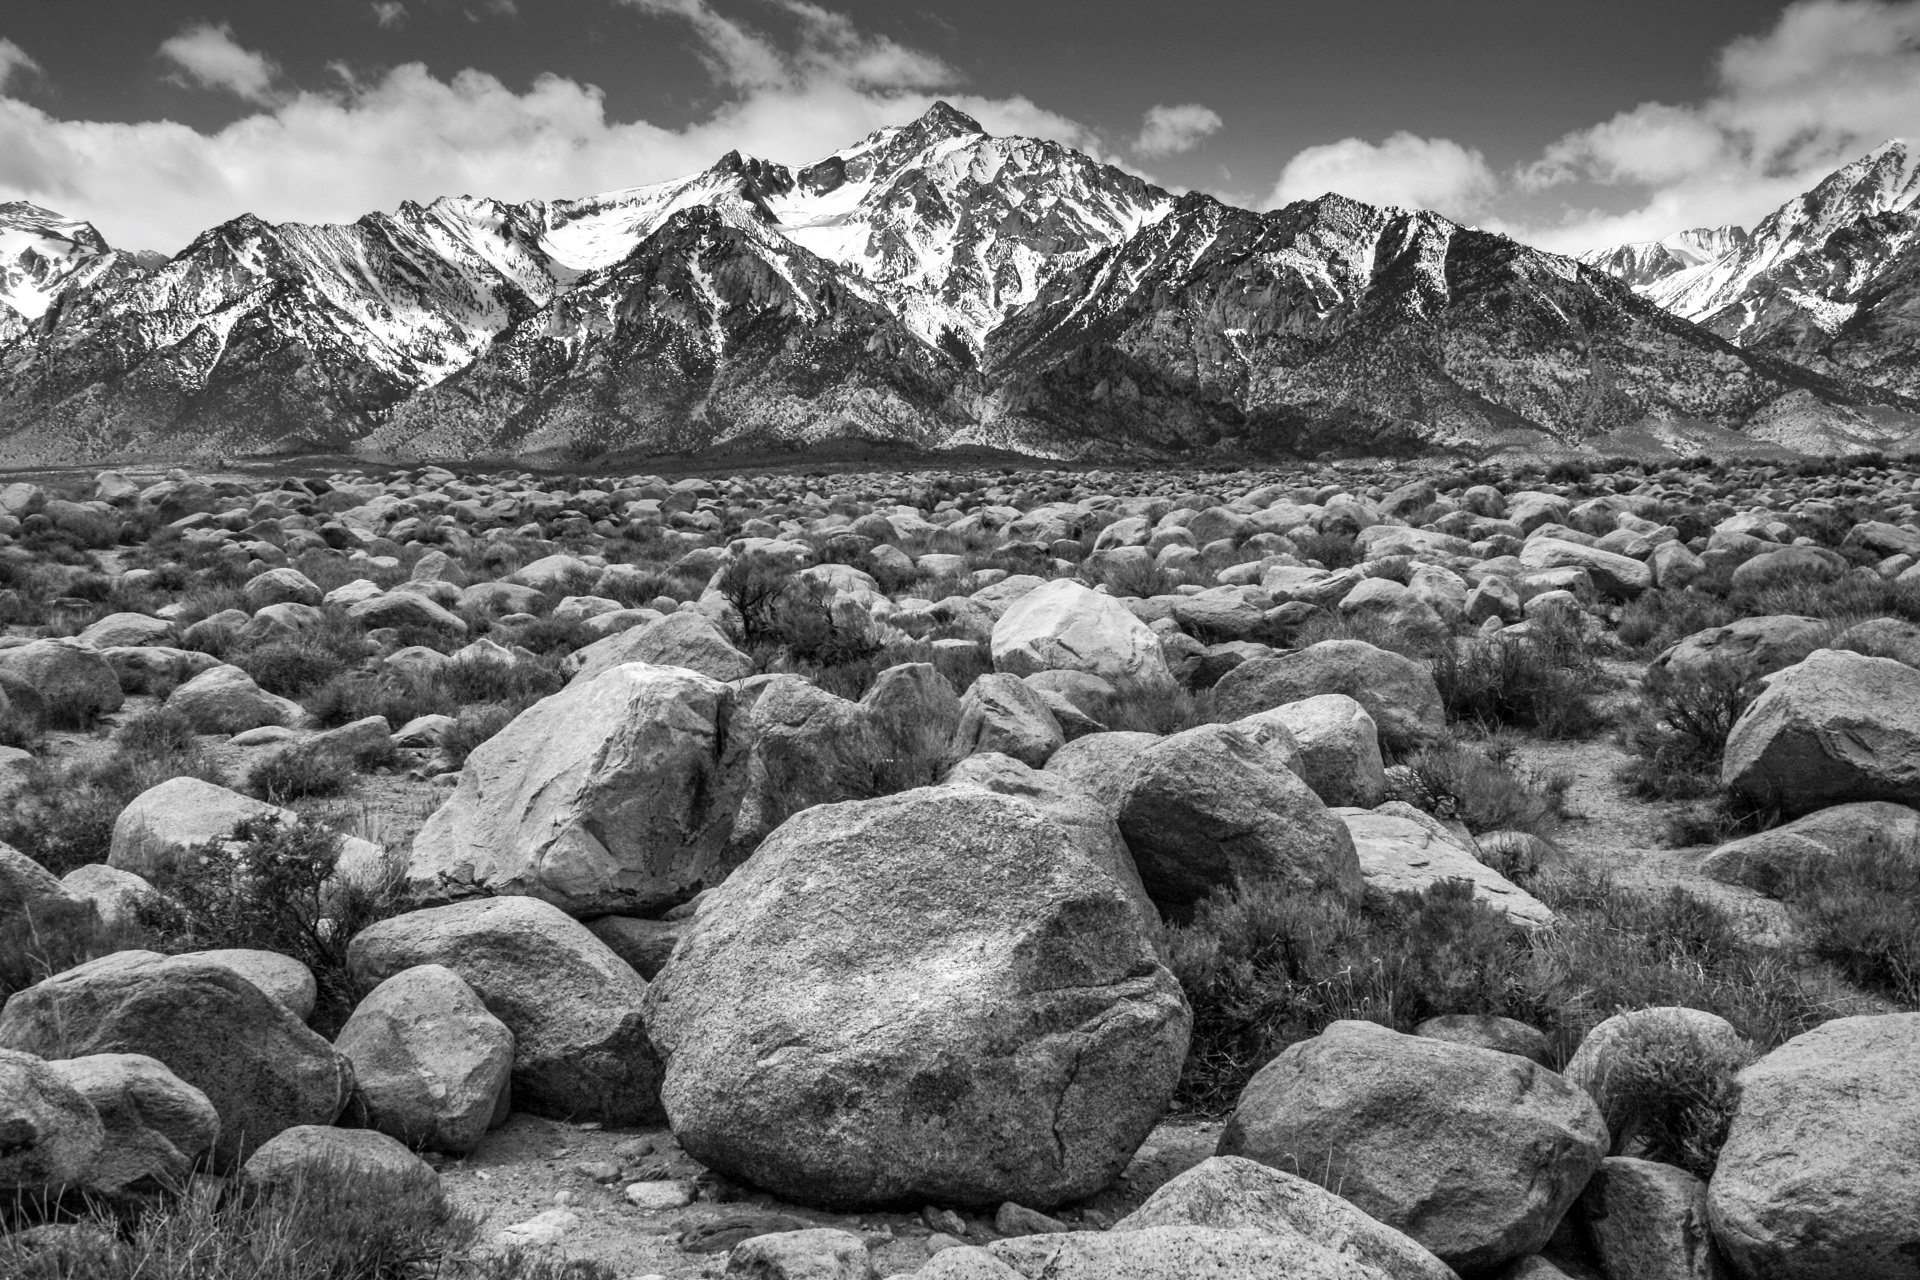 Mt. Williamson from Manzanar